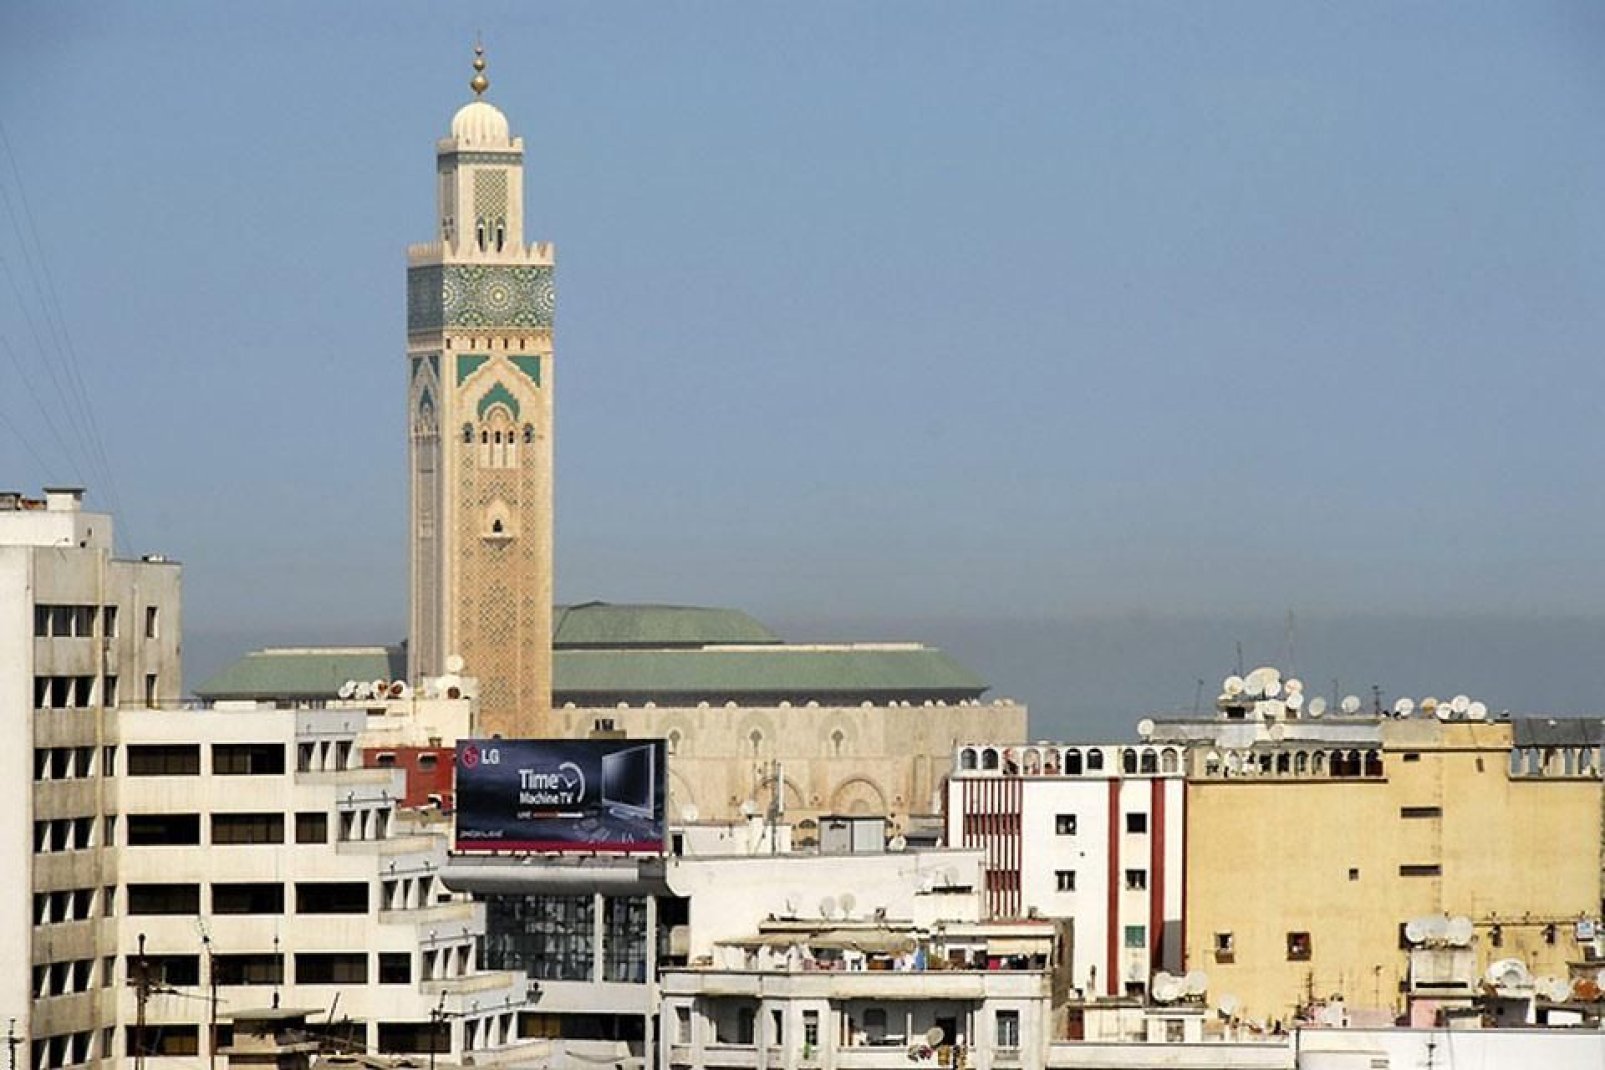 El imán invita a la plegaria con la llamada del muecín, que podemos escuchar gracias a la altura del minarete.